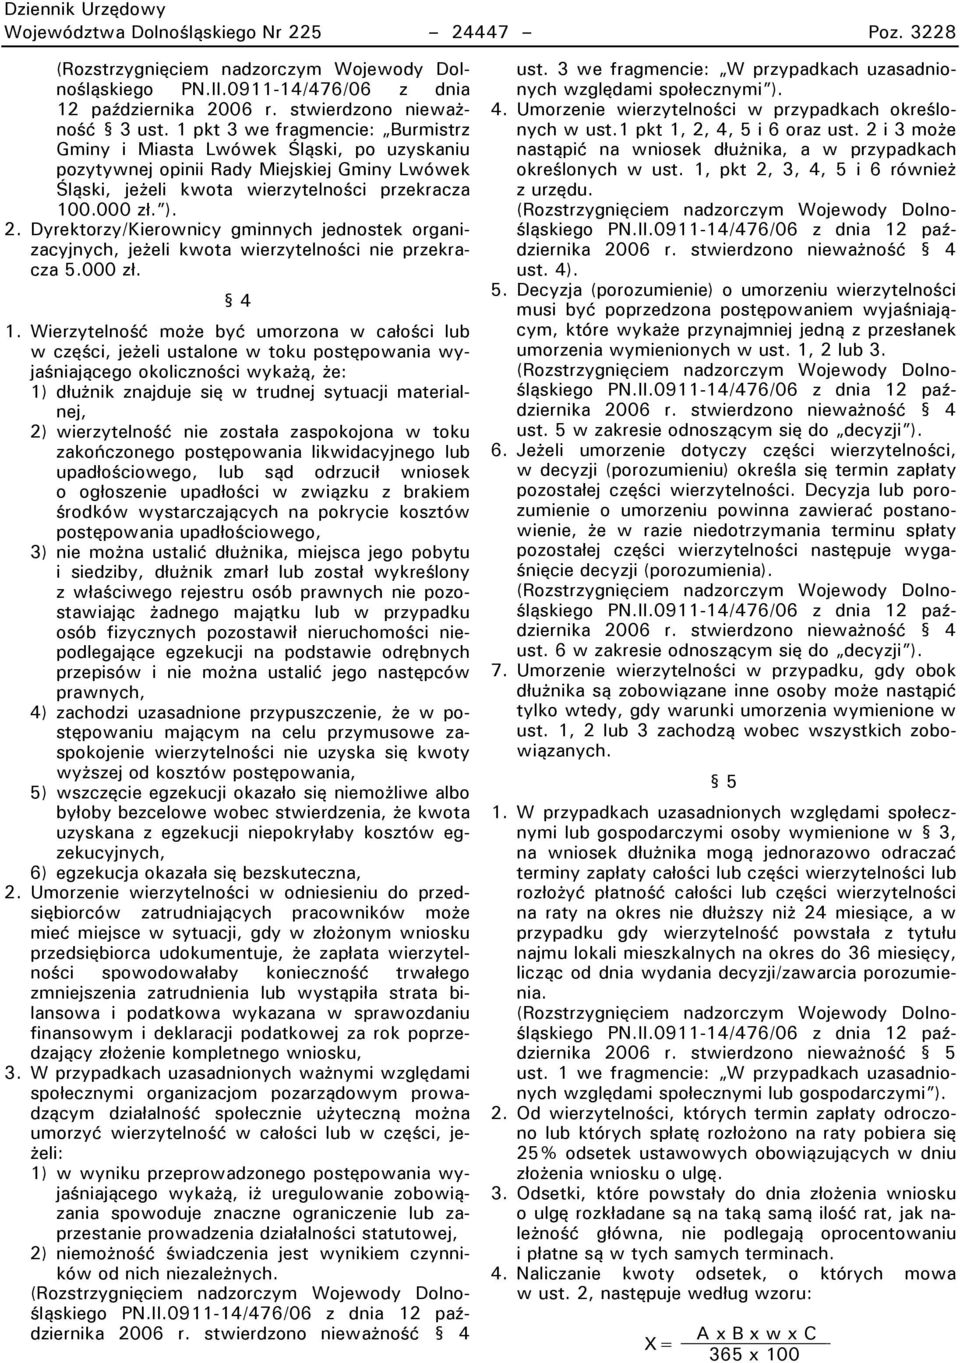 Dyrektorzy/Pierownicy gminnych jednostek organizacyjnych, jeżeli kwota wierzytelności nie przekracza 5.000 zł. 4 1.